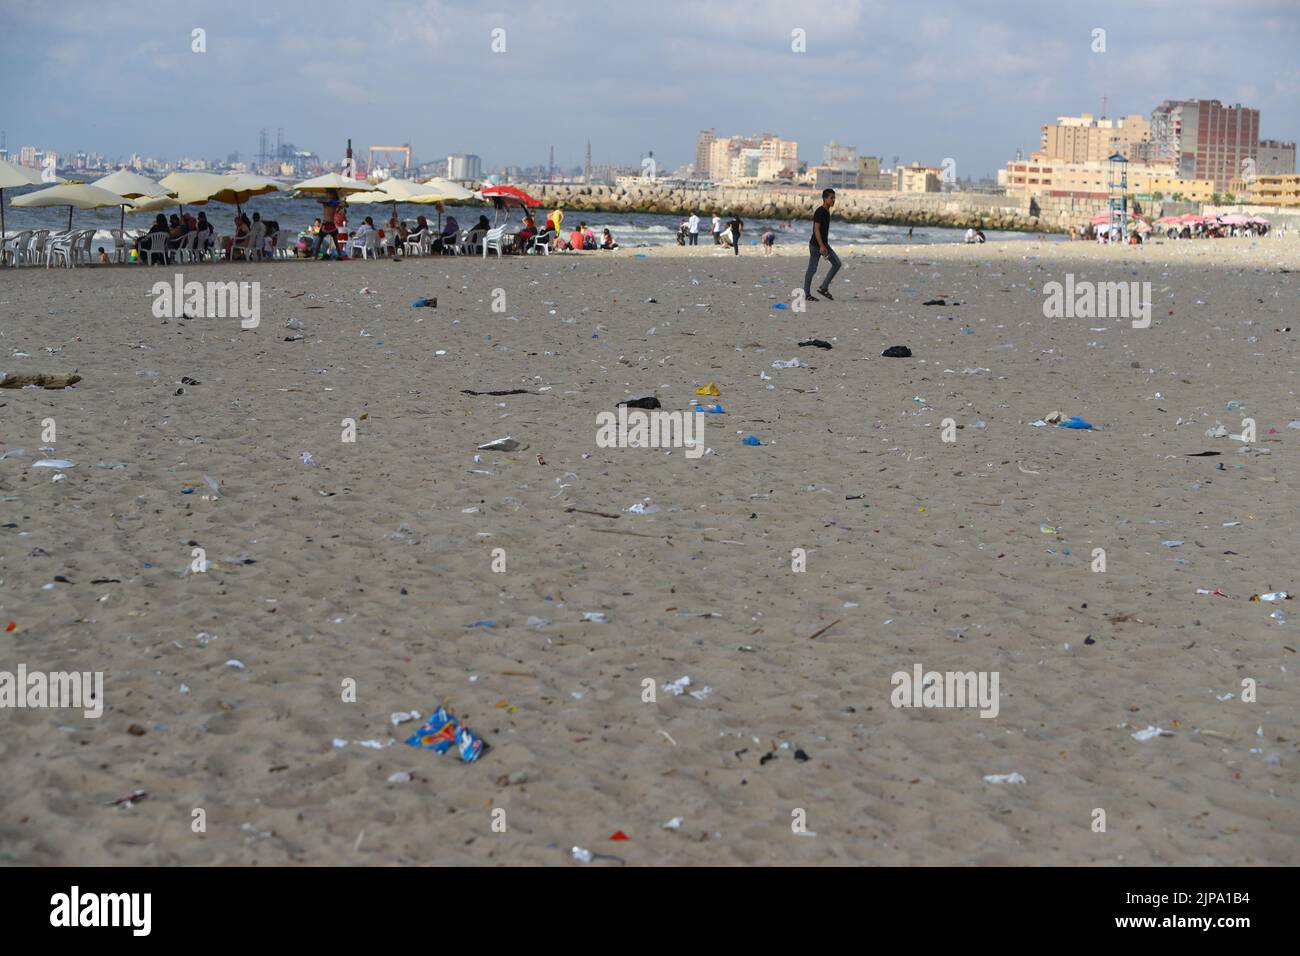 (220816) -- ALEXANDRIE, 16 août 2022 (Xinhua) -- photo prise le 13 août 2022 montre une plage avant la campagne de nettoyage à Alexandrie, en Égypte. Sur les plages de la ville égyptienne d'Alexandrie, un groupe de jeunes égyptiens sont généralement vus tenant des sacs en plastique vert et blanc pour recueillir les déchets de dispersion. Ils participent à une campagne de nettoyage organisée par Banlastic Egypt, un projet environnemental lancé par un groupe de jeunes de la ville méditerranéenne. Le projet vise à sensibiliser le public à la pollution par le plastique et à la façon dont les déchets de plastique à usage unique nuisent à la vie marine si moi Banque D'Images